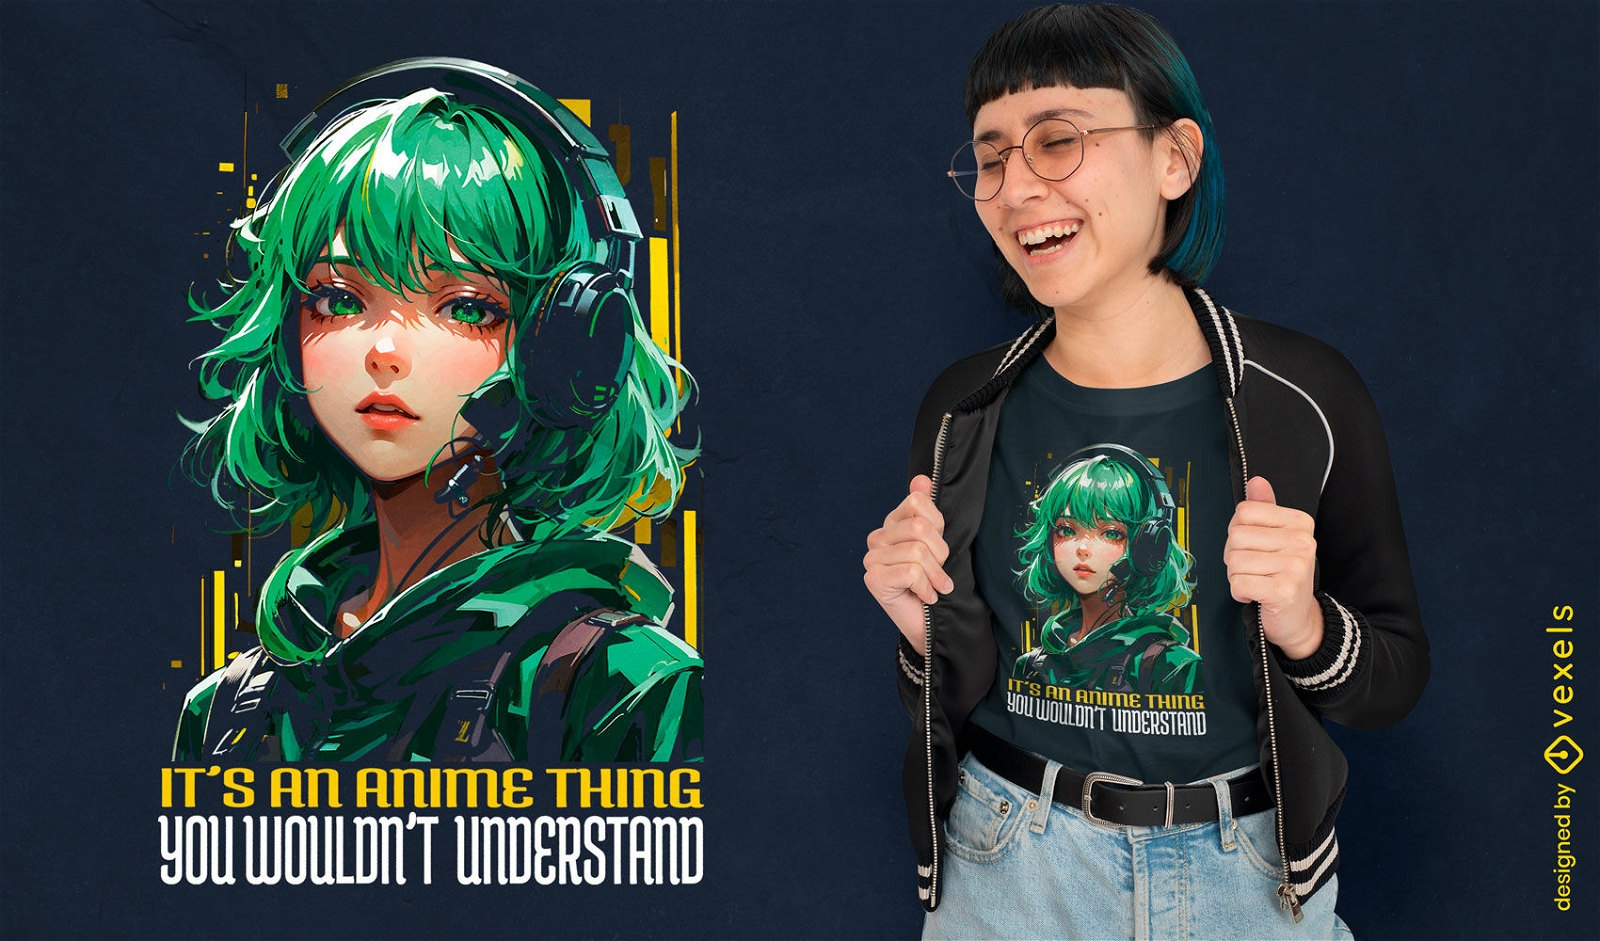 Anime inspired girl t-shirt design